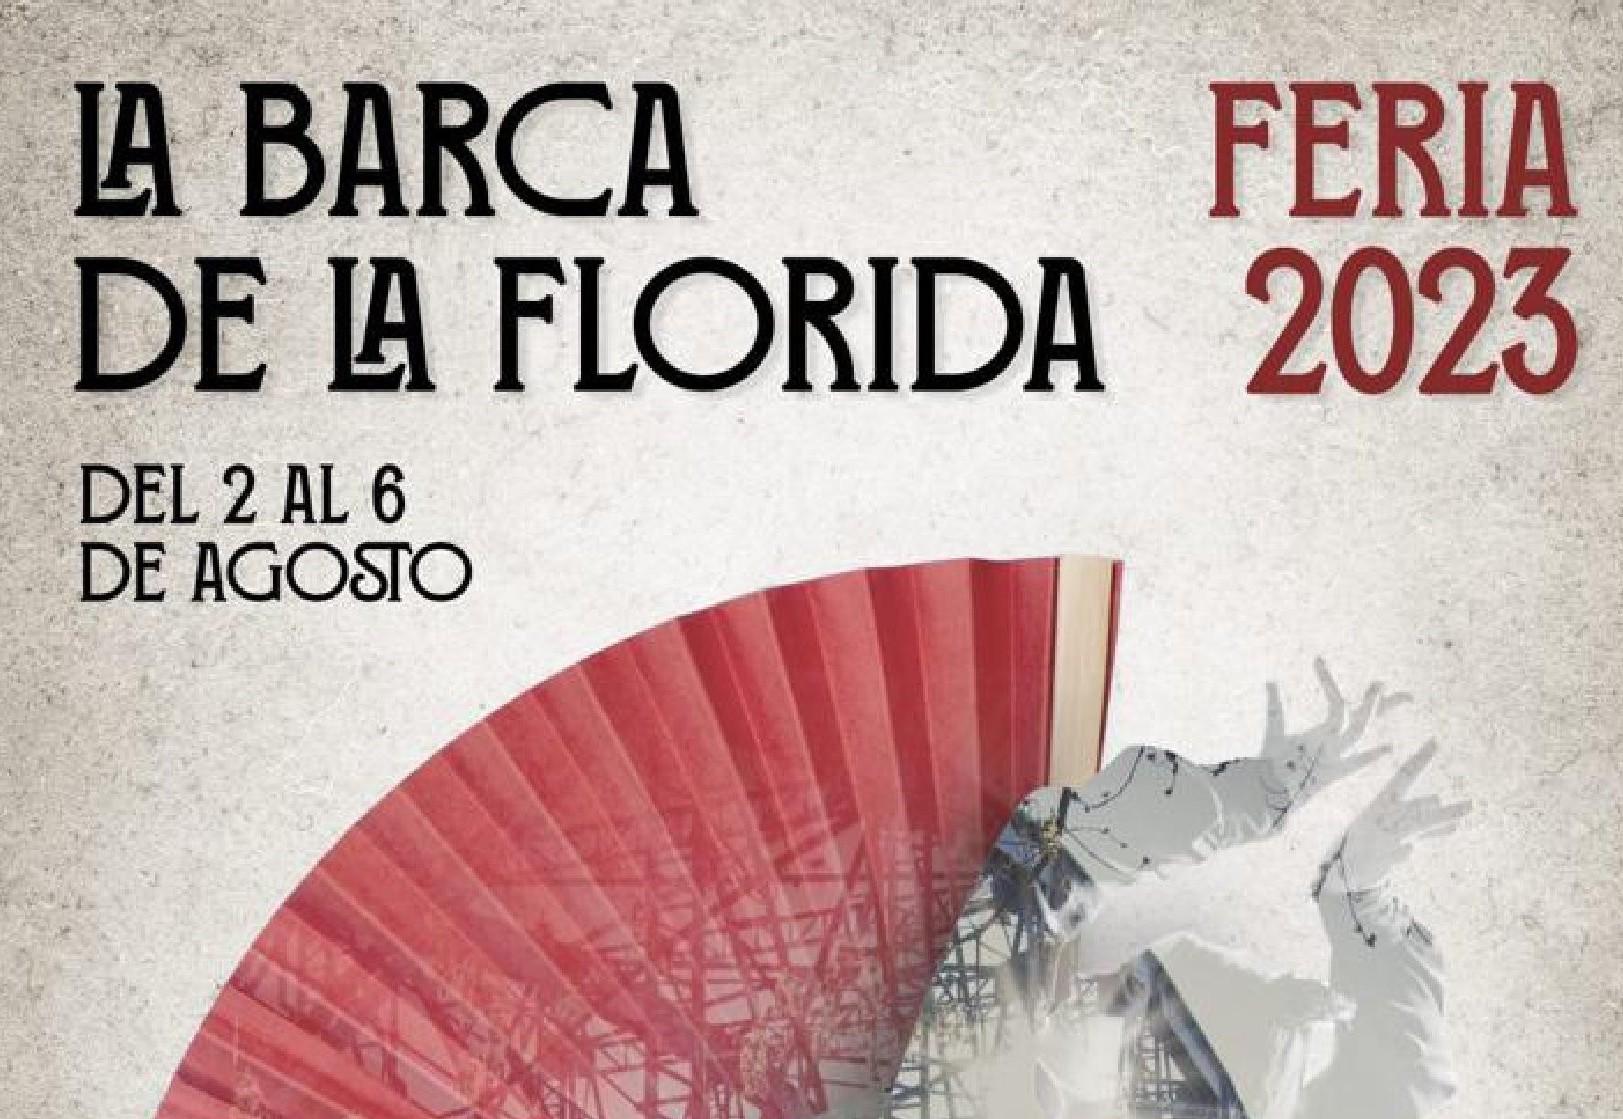 La Barca de la Florida celebra la Feria 2023 del 2 al 6 de agosto